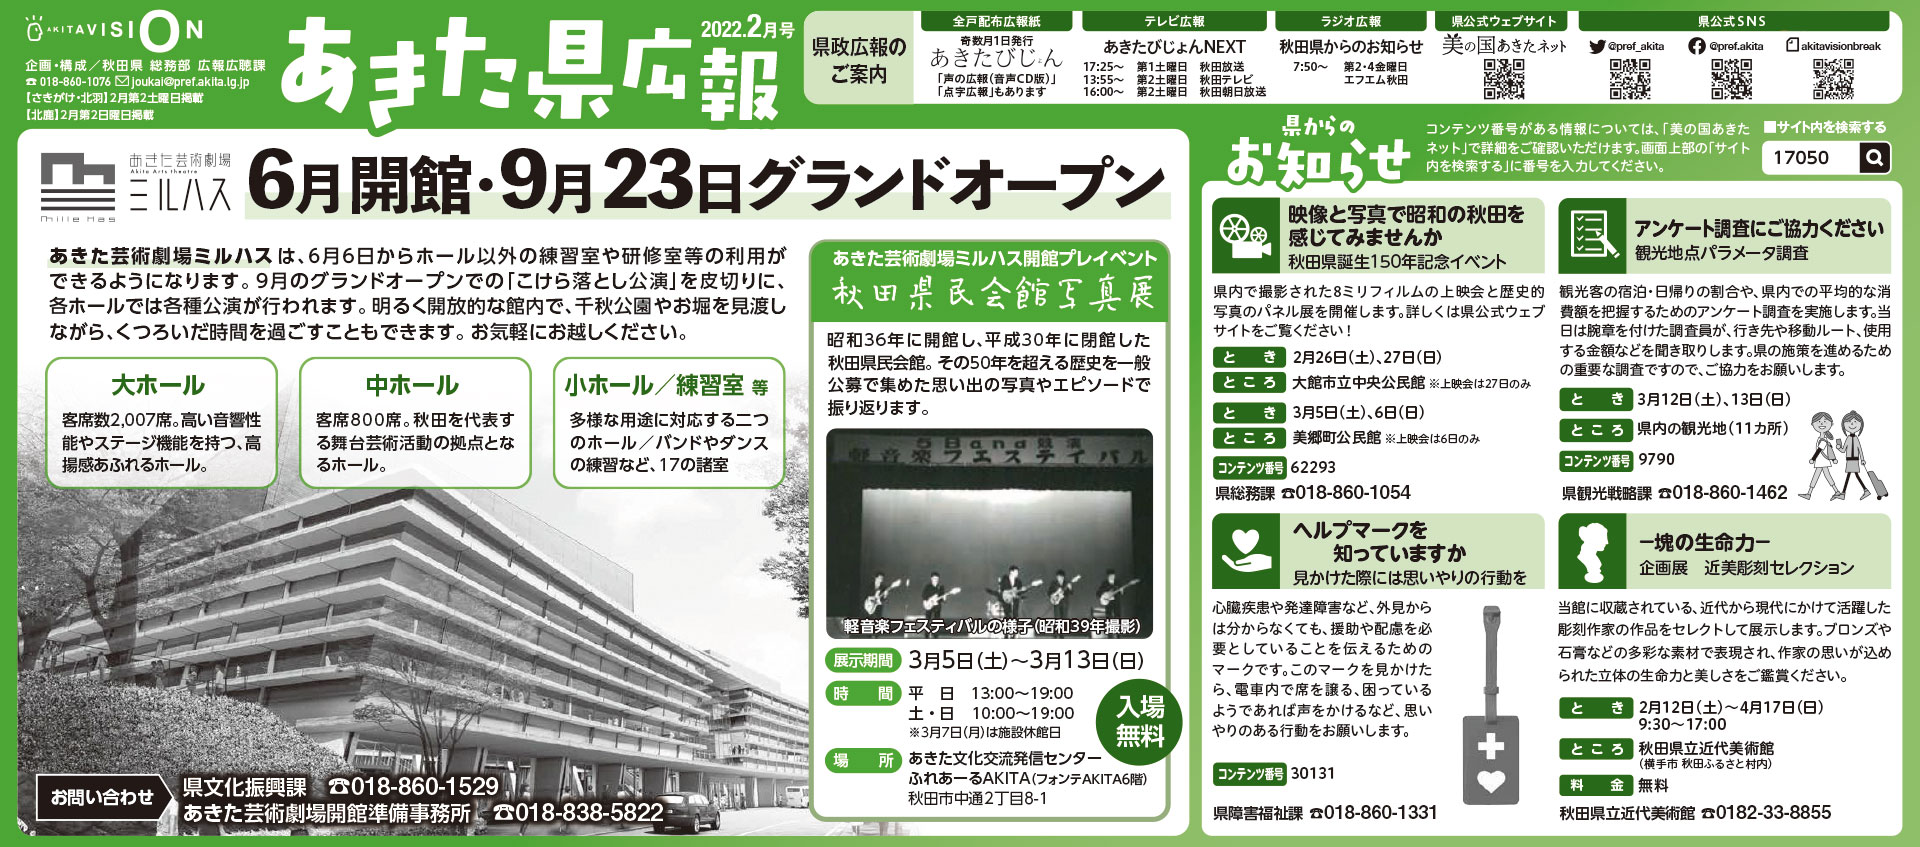 令和4年2月-秋田県新聞広報-あきた県広報